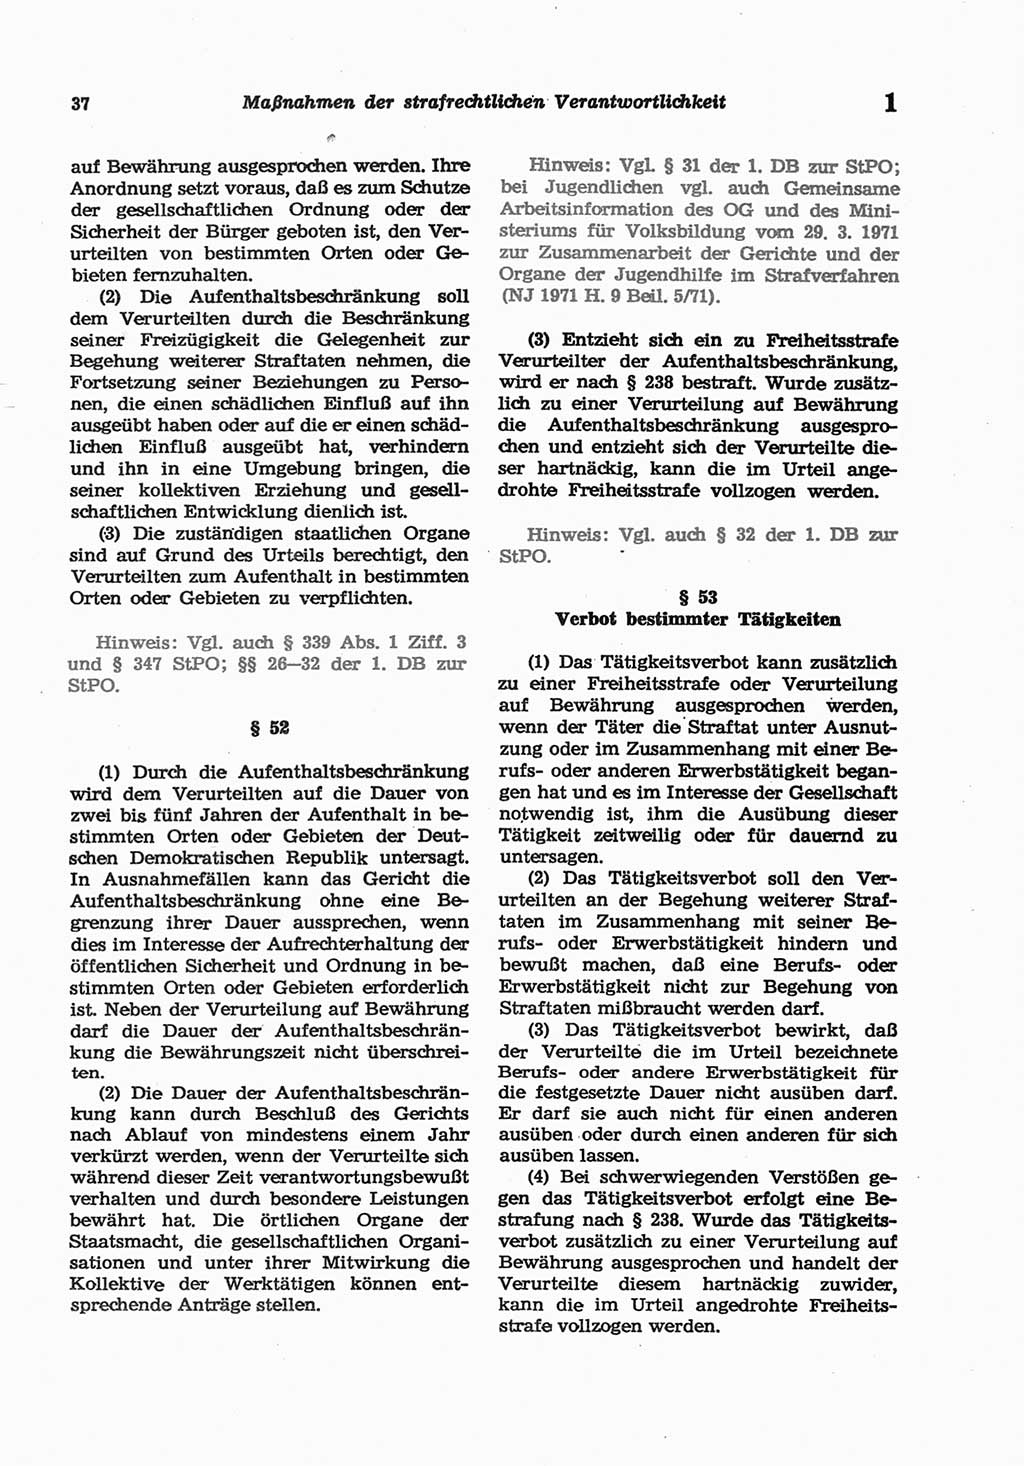 Strafgesetzbuch (StGB) der Deutschen Demokratischen Republik (DDR) und angrenzende Gesetze und Bestimmungen 1977, Seite 37 (StGB DDR Ges. Best. 1977, S. 37)